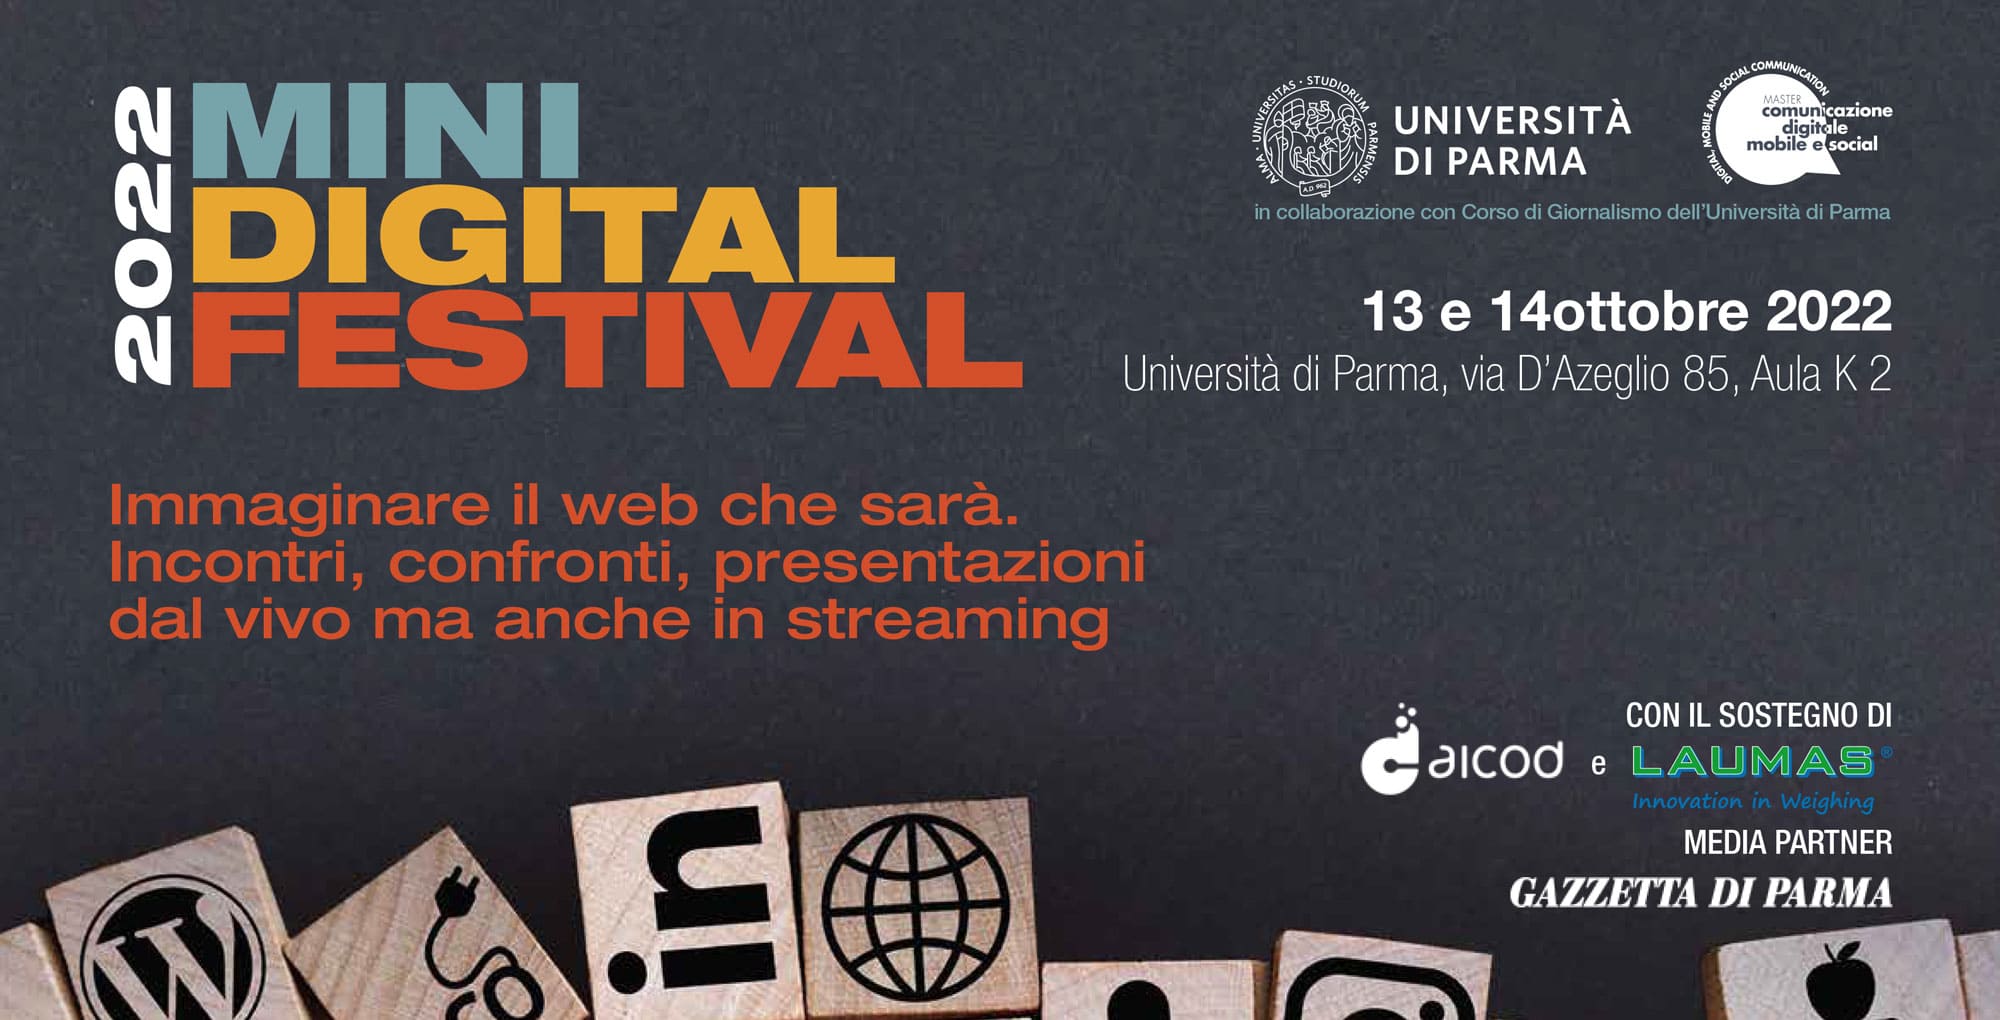 Il "Mini Digital Festival" all’Università di Parma